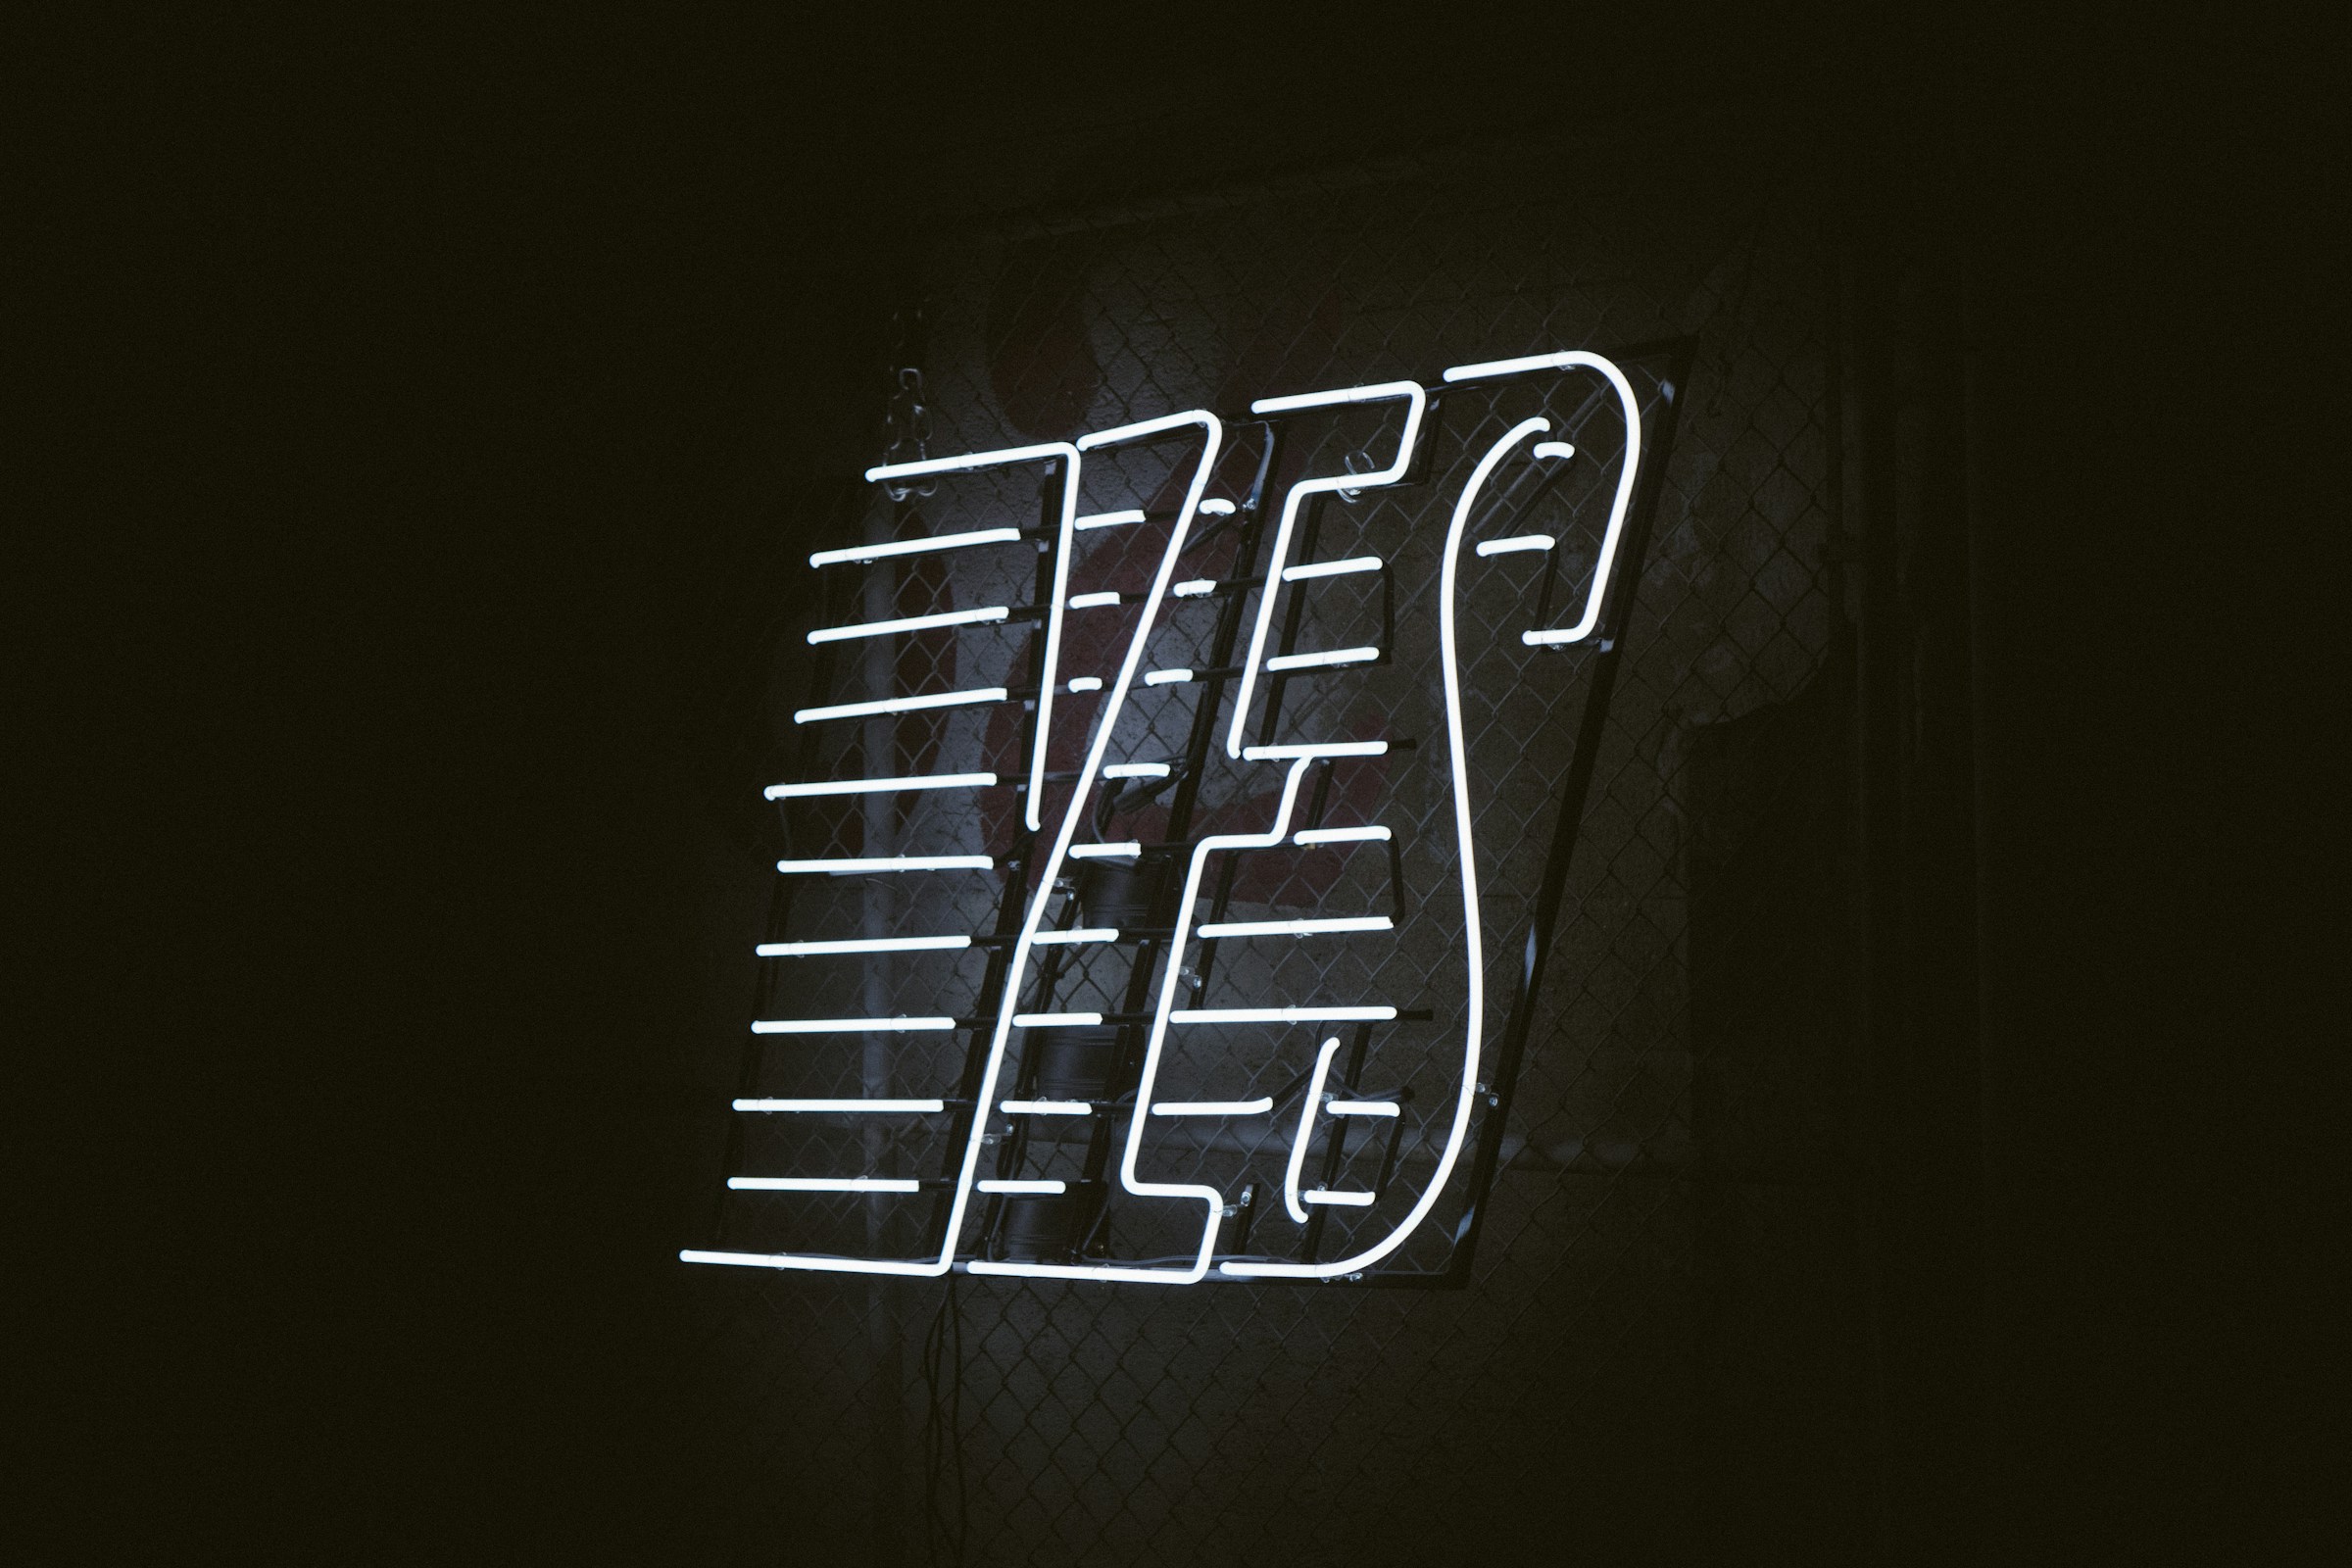 Ein Bild mit einem schwarzen Hintergrund, auf dem in leuchtenden weißen Neonbuchstaben das Wort "Yes" strahlt. Ja zu Einwandbehandlung im Vertrieb.